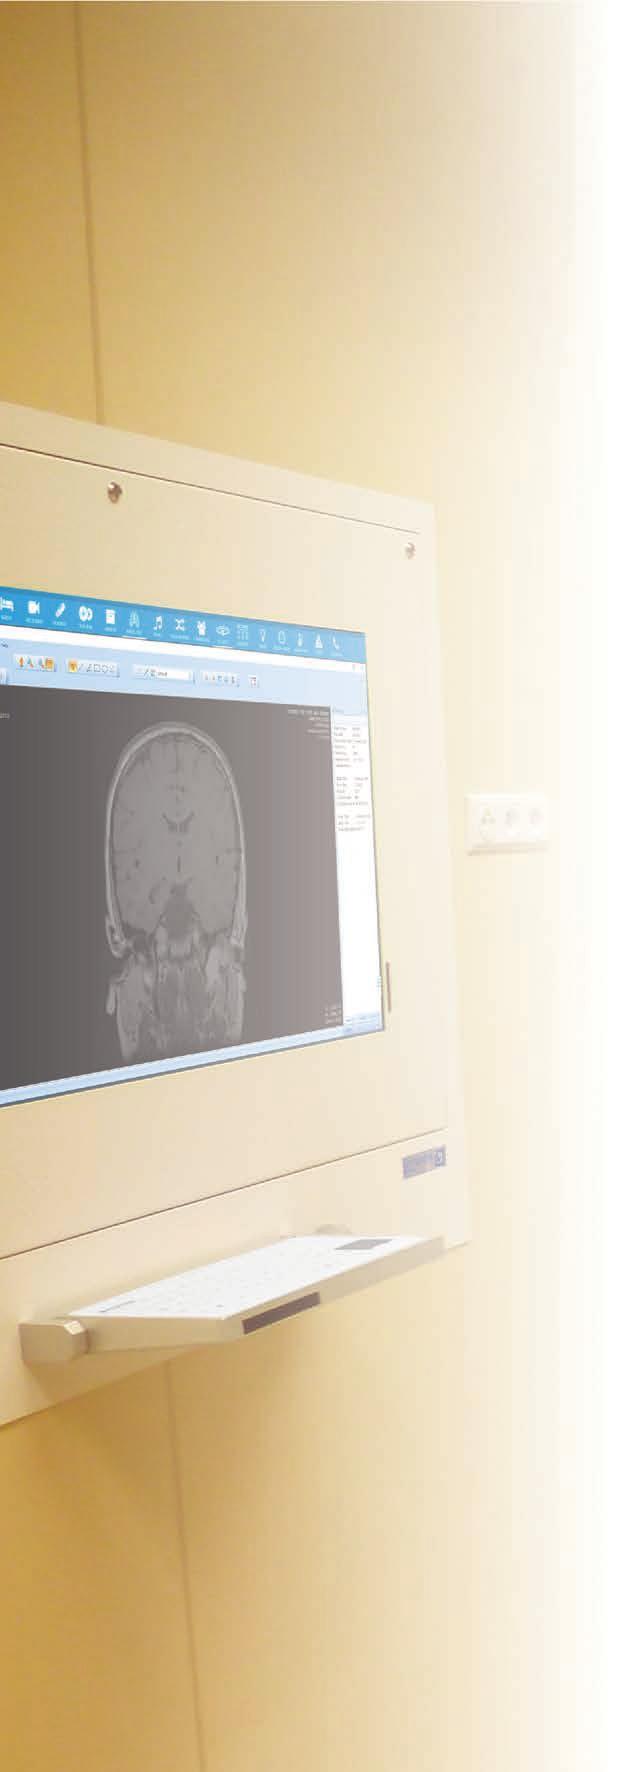 mianem radiologia cyfrowa określamy procedurę otrzymywania i przetwarzania obrazów cyfrowych. Po prześwietleniu pacjenta promieniami RTG obraz zapisywany jest w postaci cyfrowej.